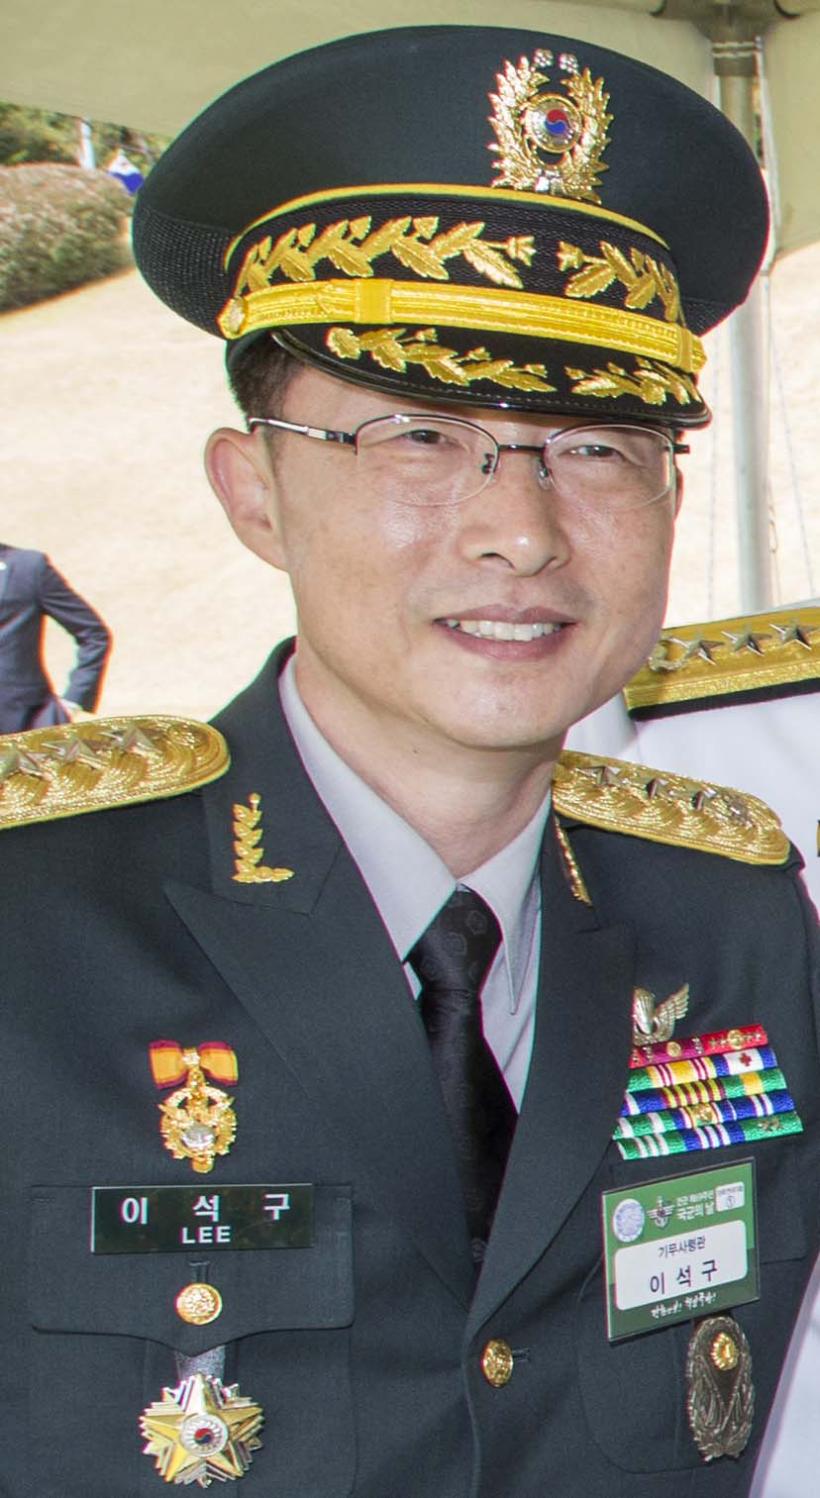 Șeful serviciului militar de informații din Coreea de Sud, schimbat din funcție pentru amestec în politică